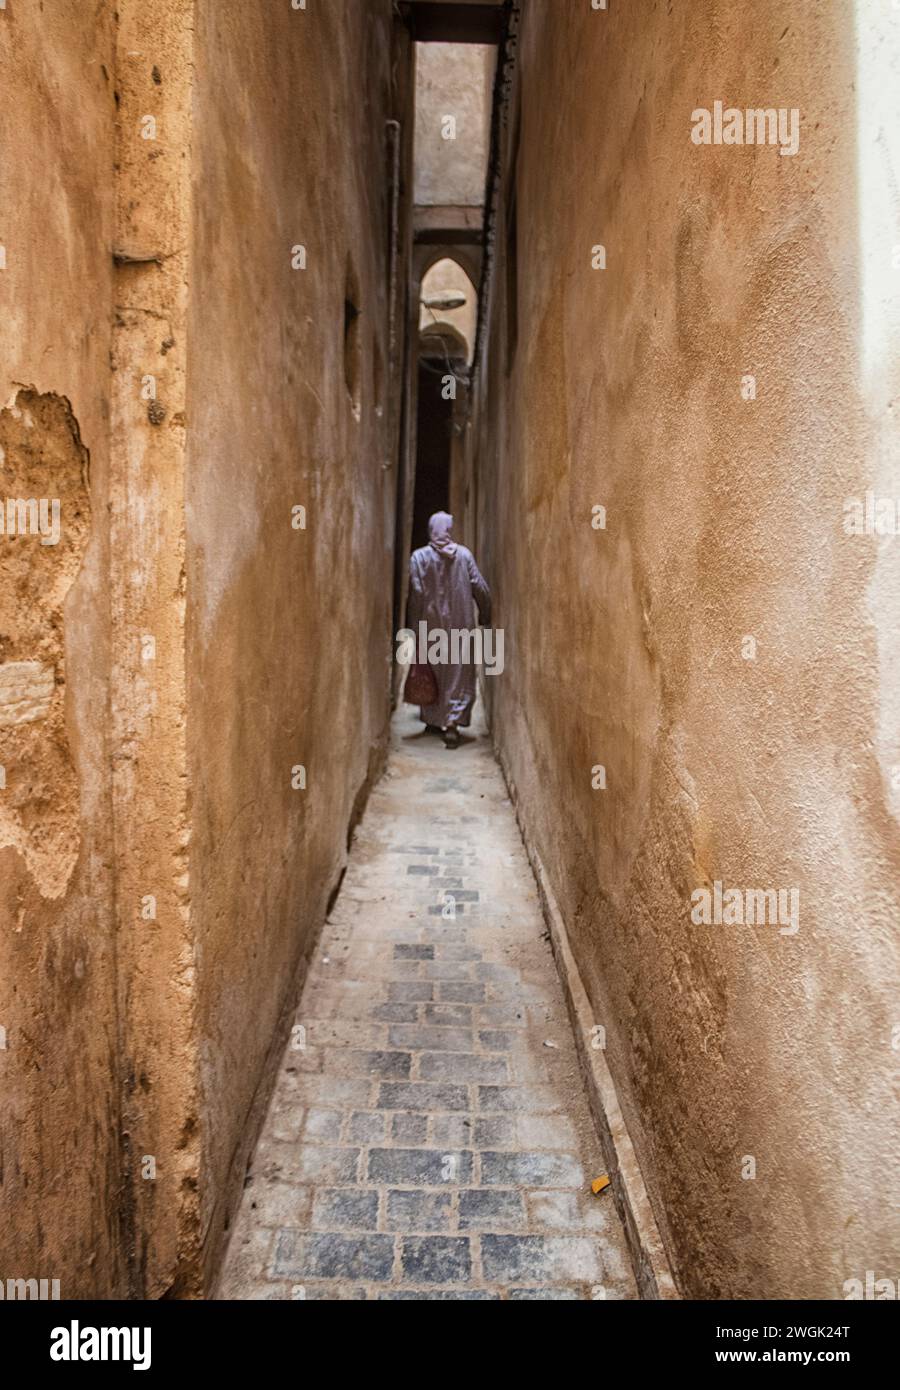 Ein Mann, der durch die engen Medina-Gassen von Fès läuft. Fès, die zweitgrößte Stadt Marokkos, wird oft als Kulturhauptstadt des Landes bezeichnet. Es ist vor allem bekannt für seine von Fes El Bali ummauerte Medina mit mittelalterlicher marinidischer Architektur, pulsierenden Souks und der Atmosphäre der alten Welt. Die Medina beherbergt religiöse Schulen wie die Bou Inania aus dem 14. Jahrhundert und Al Attarine, die beide mit aufwändigen Zedernschnitzereien und kunstvollen Fliesen verziert sind. Marokko. Stockfoto